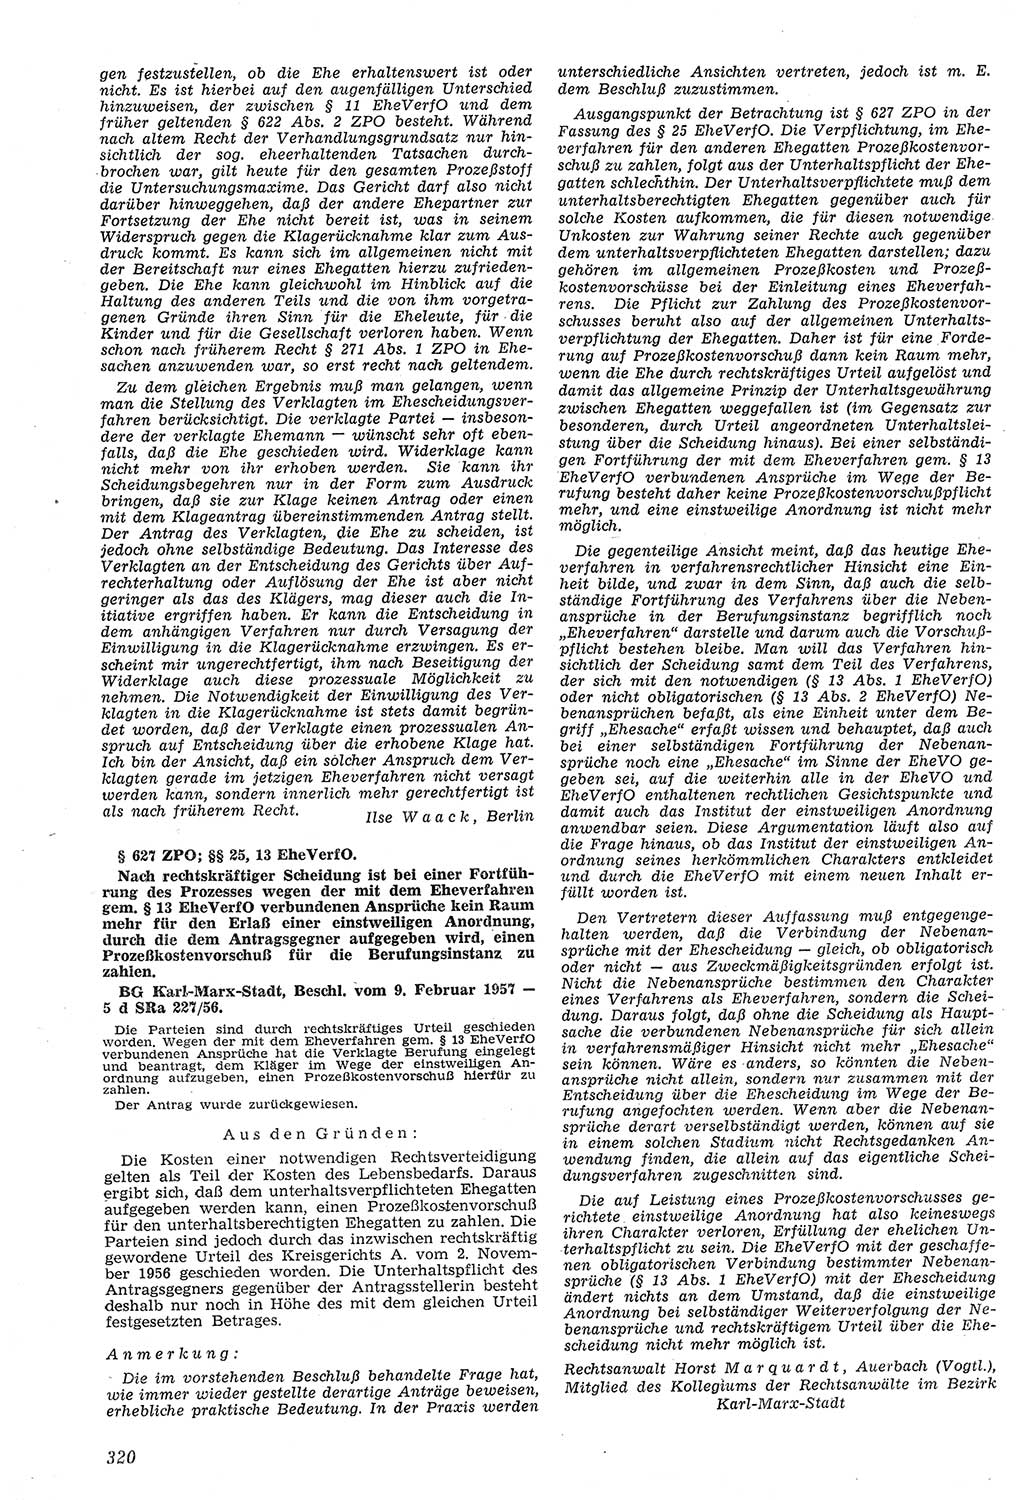 Neue Justiz (NJ), Zeitschrift für Recht und Rechtswissenschaft [Deutsche Demokratische Republik (DDR)], 11. Jahrgang 1957, Seite 320 (NJ DDR 1957, S. 320)